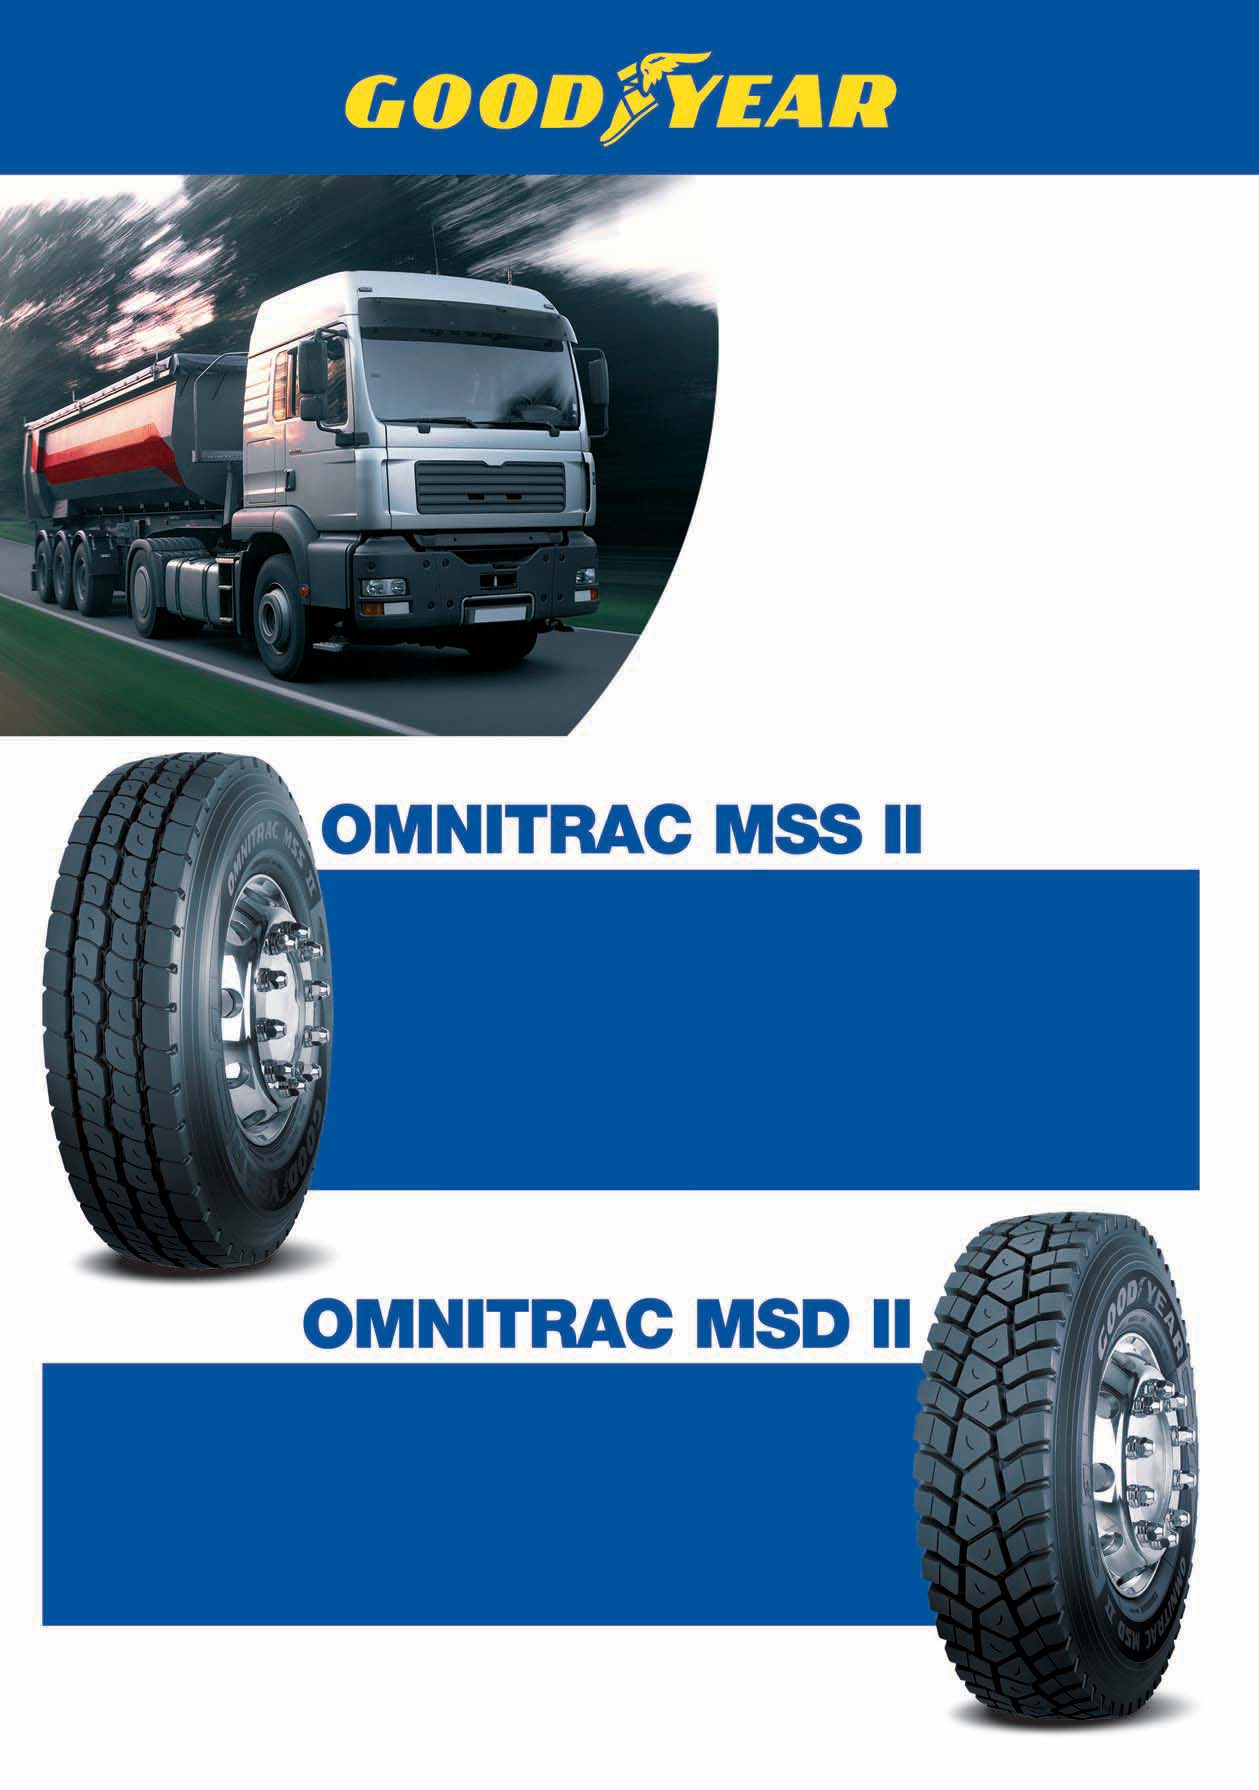 Os Omnitrac MSS II e MSD II são uma nova geração de pneus de direcção e tracção, destinados a aplicações mistas.